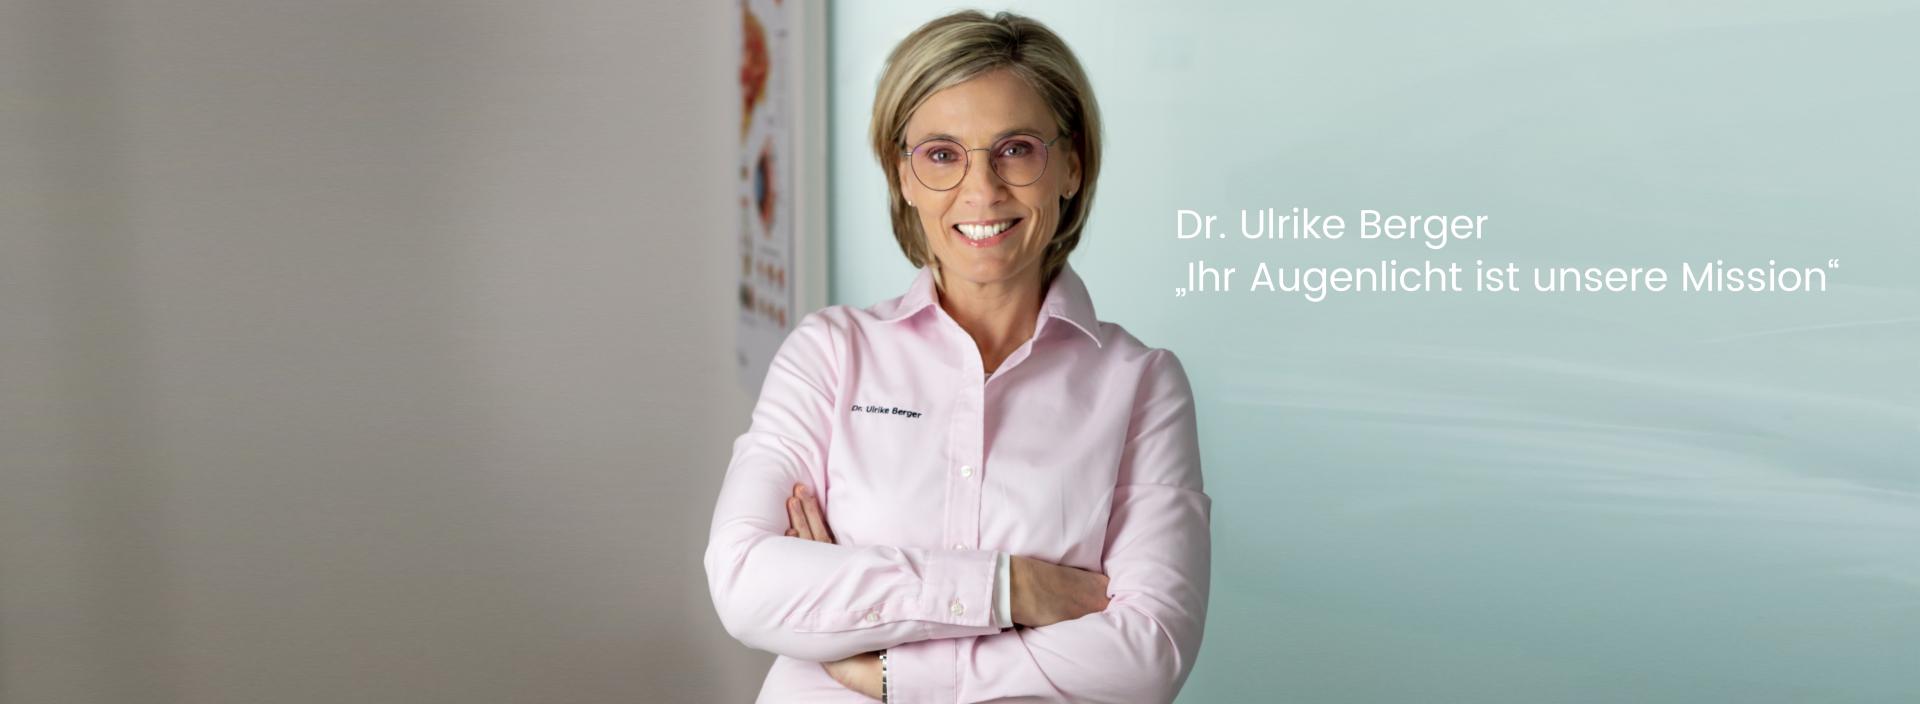 Augenärztin Dr. Ulrike Berger aus Klagenfurt